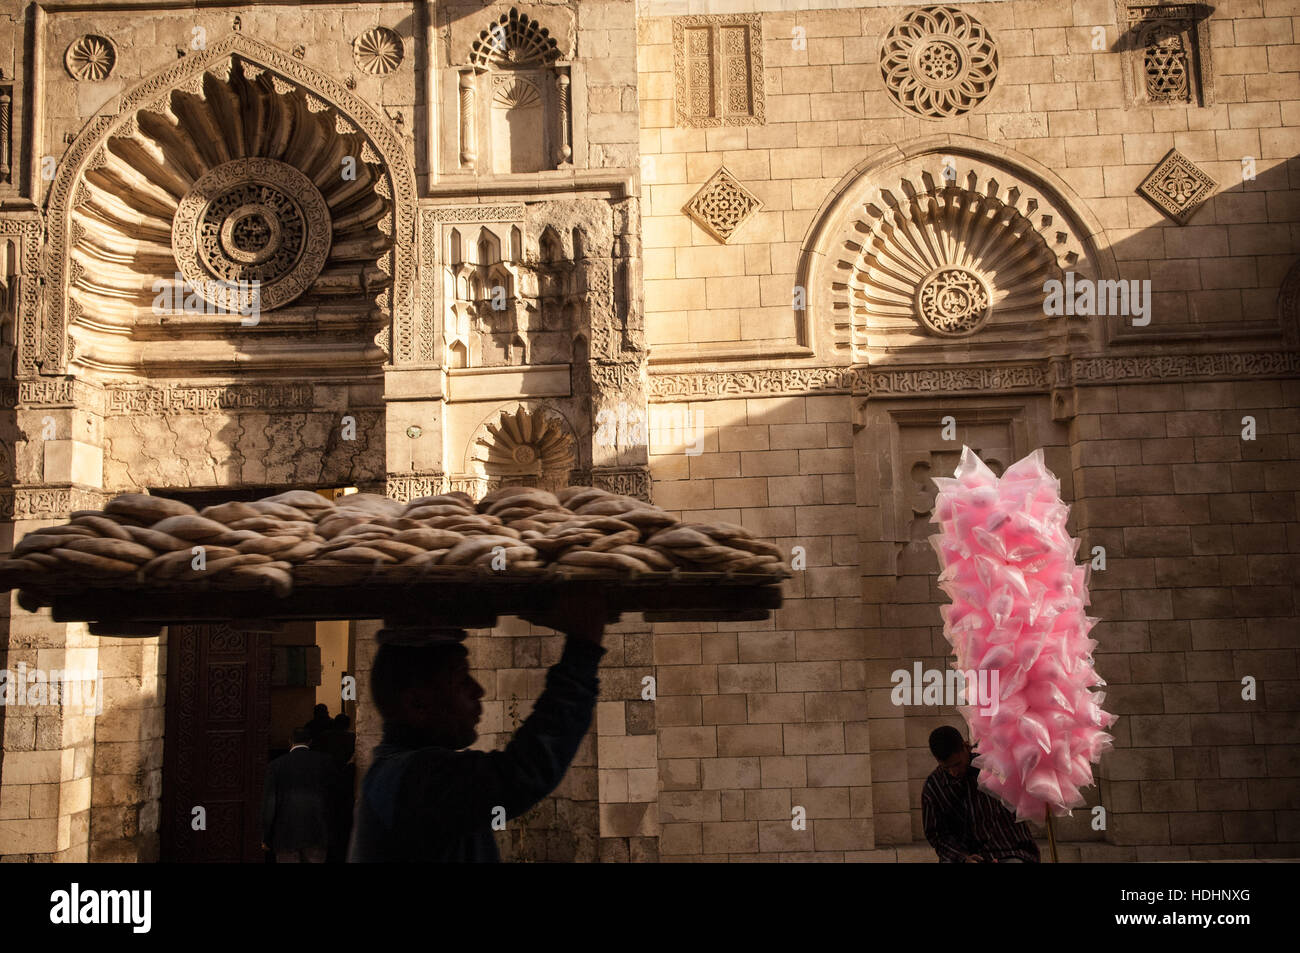 Las calles del barrio islámico de El Cairo y el bazar de Khan el khalili Foto de stock